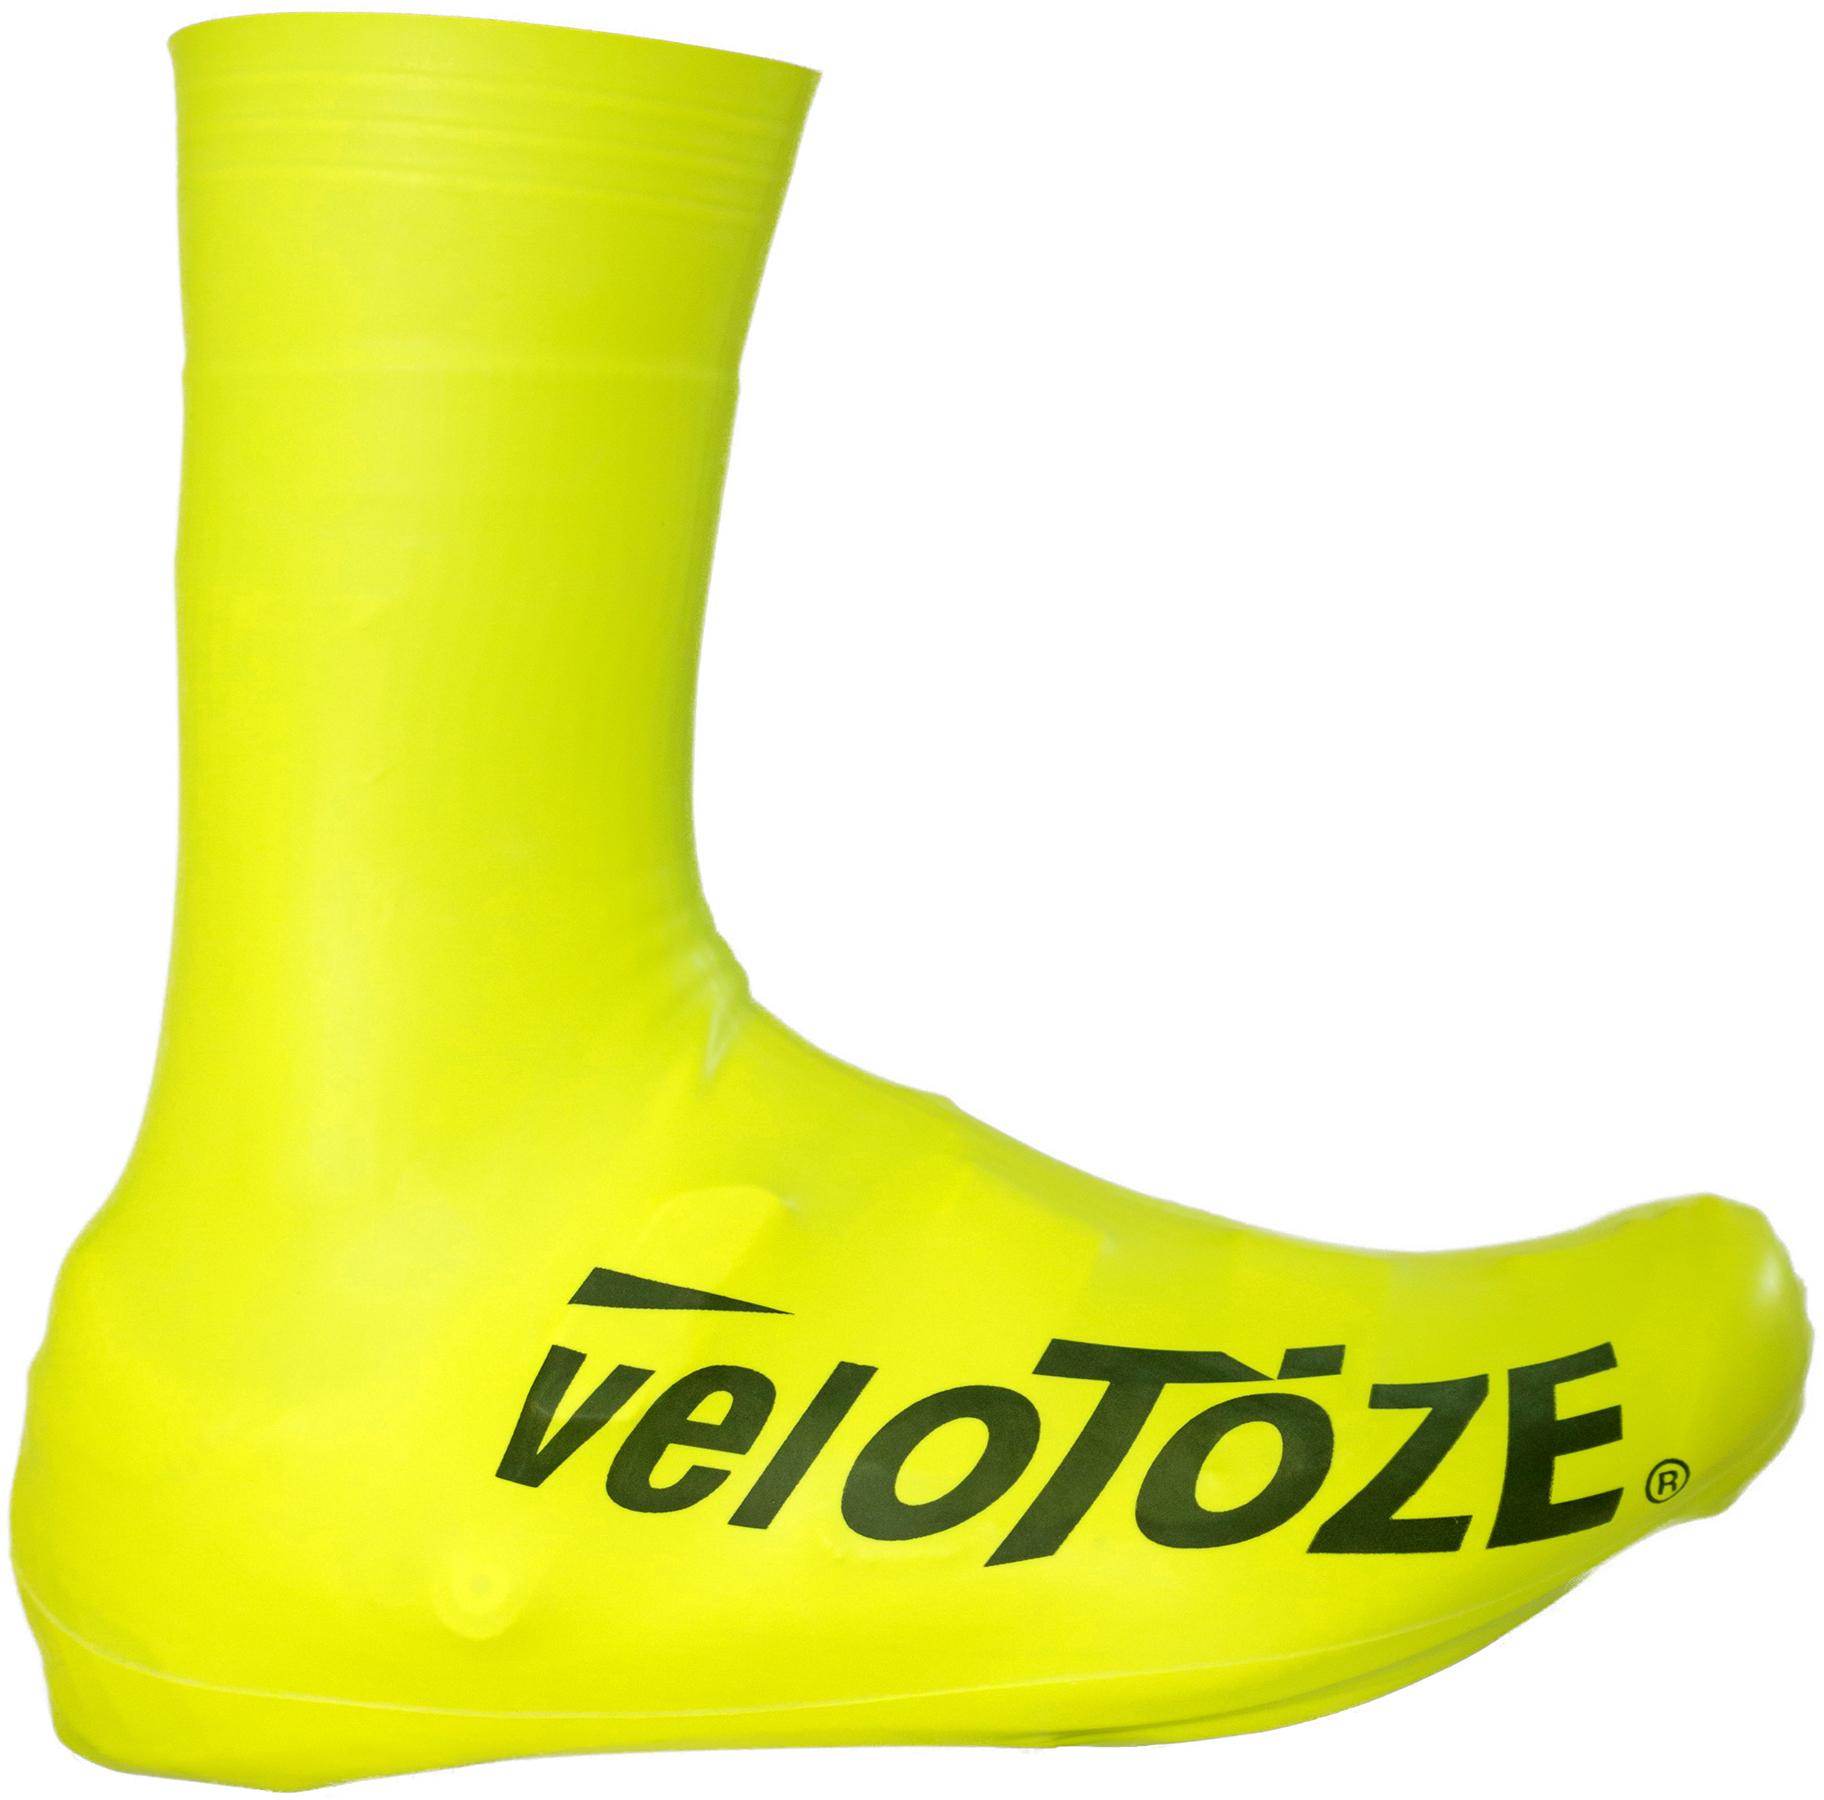 Velotoze Tall Shoe Covers 2.0  Hi-viz Yellow